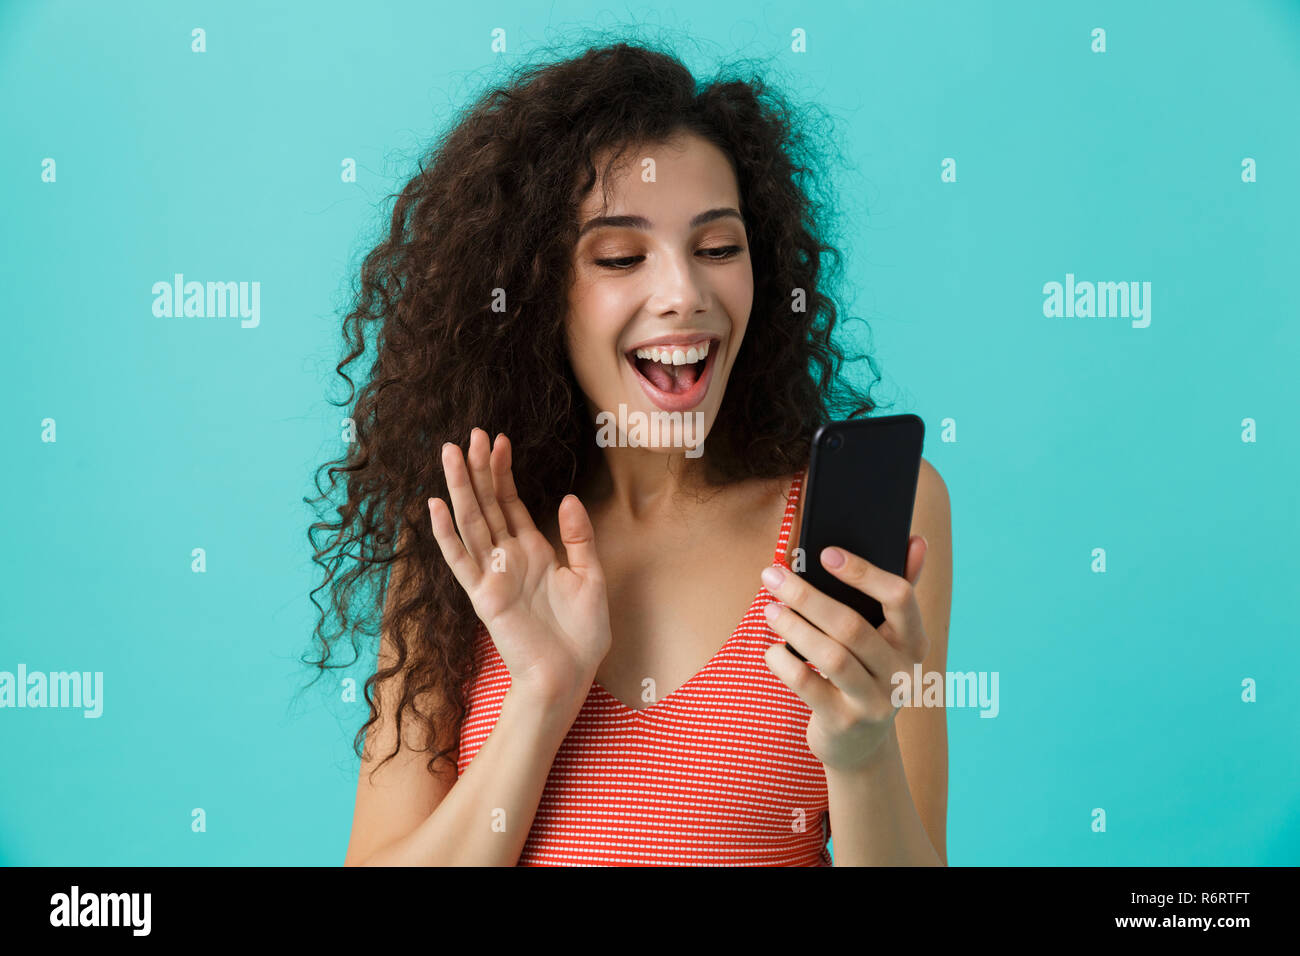 Photo de femme joyeuse 20s avec des cheveux bouclés smiling and looking at mobile phone isolé sur fond bleu Banque D'Images